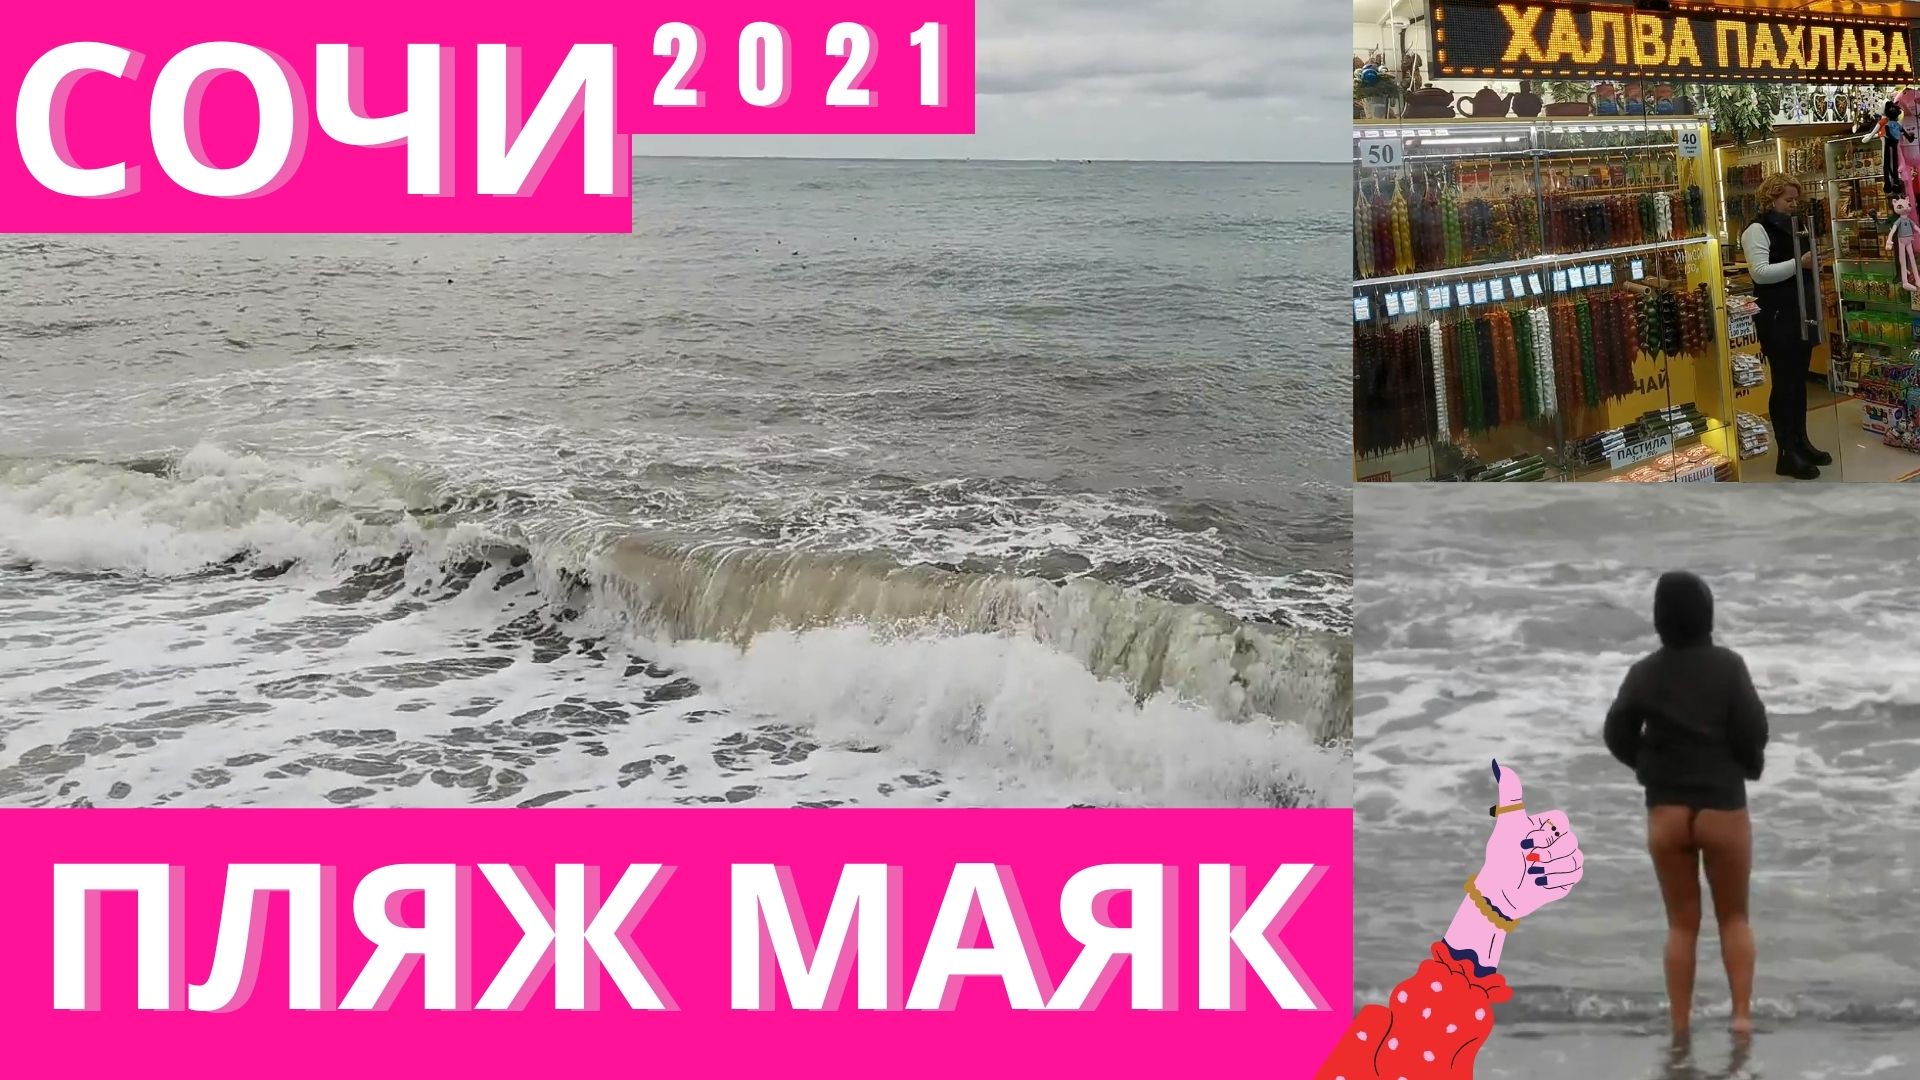 Центральная набережная, пляж Маяк Сочи 2021. Отдых в сочи зимой